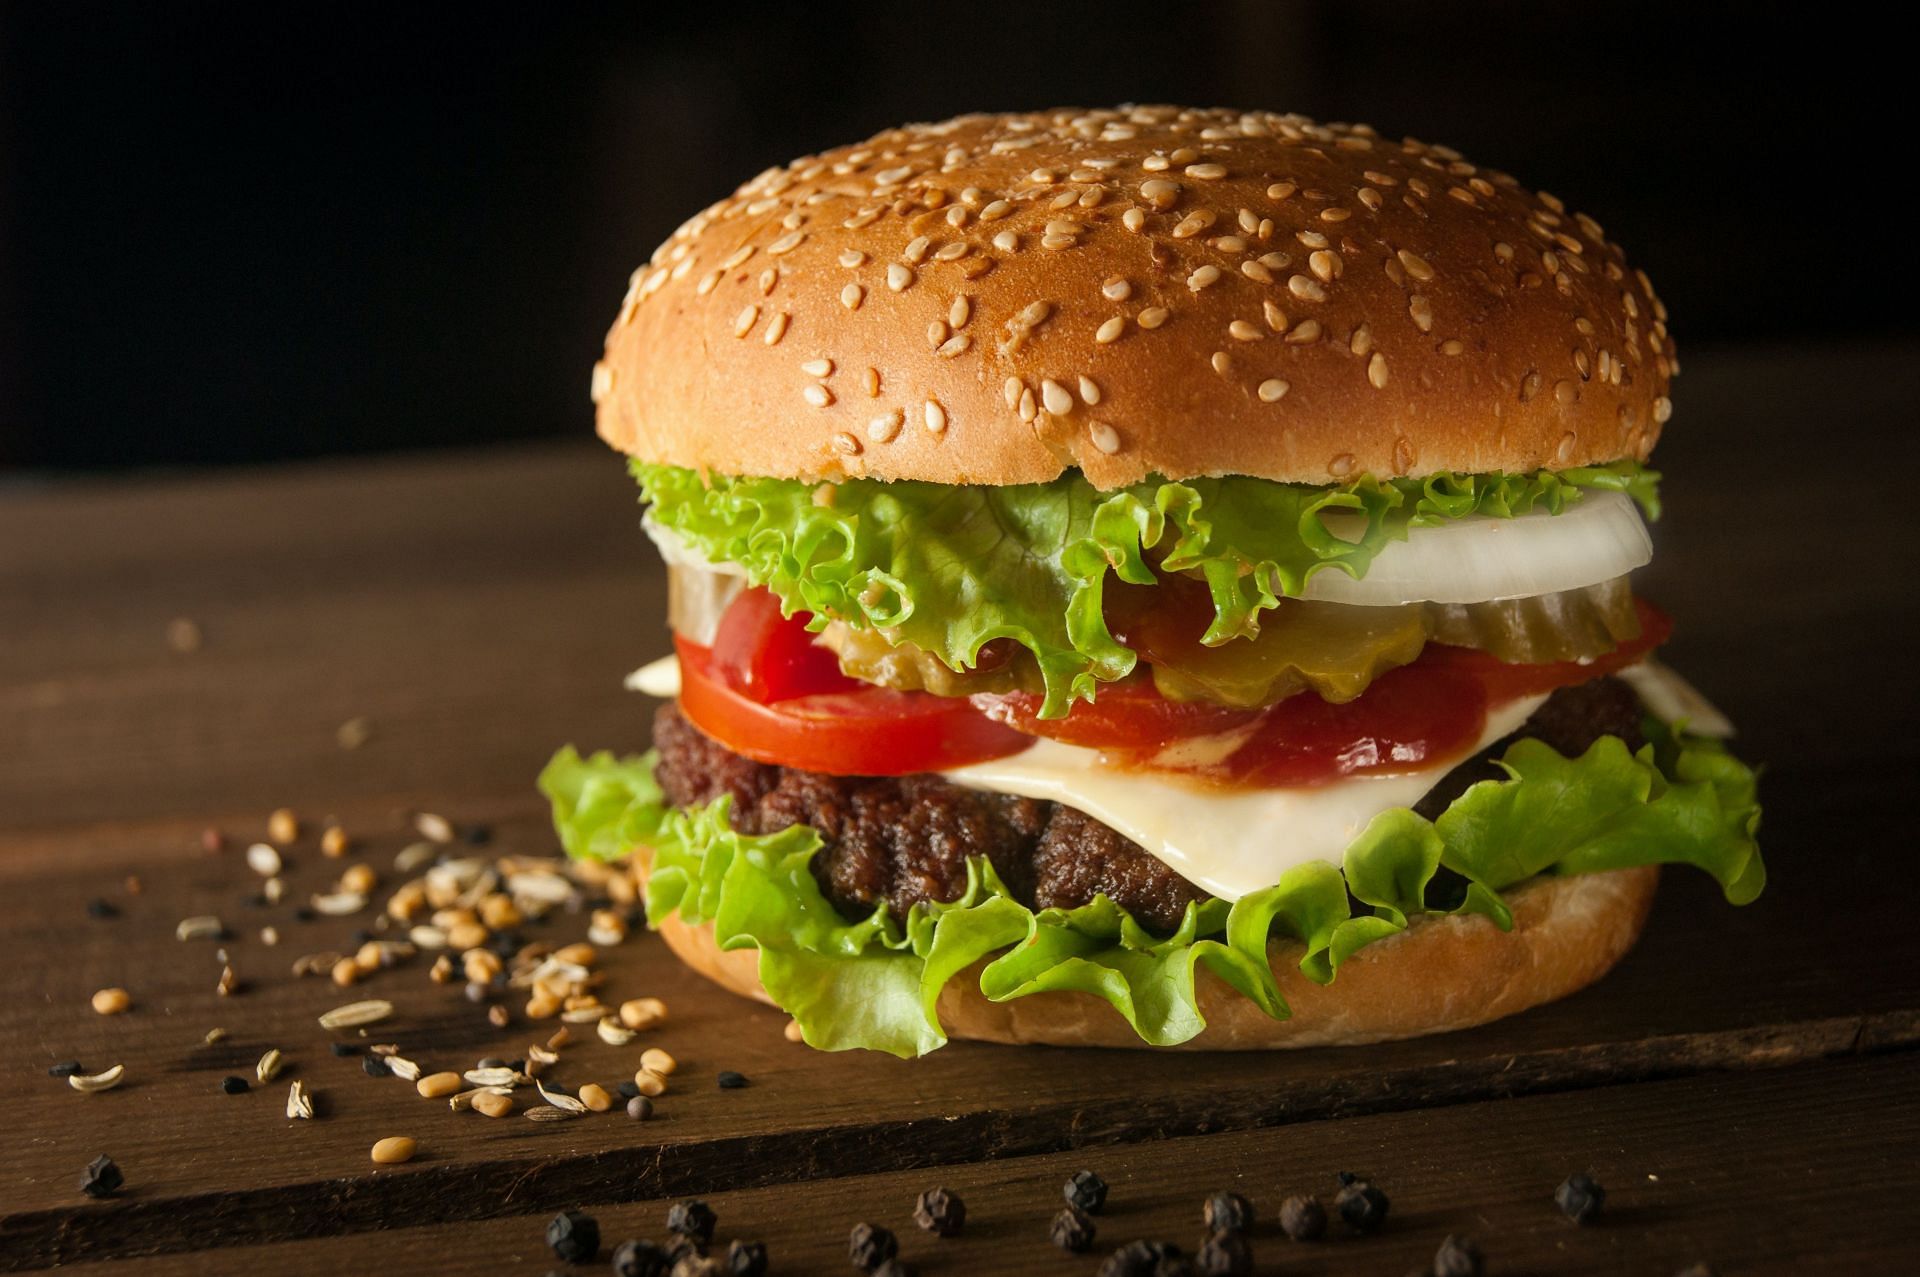 Burgers contain harmful seed oils and other additives. (Image via Unsplash/Ilya Mashkov)